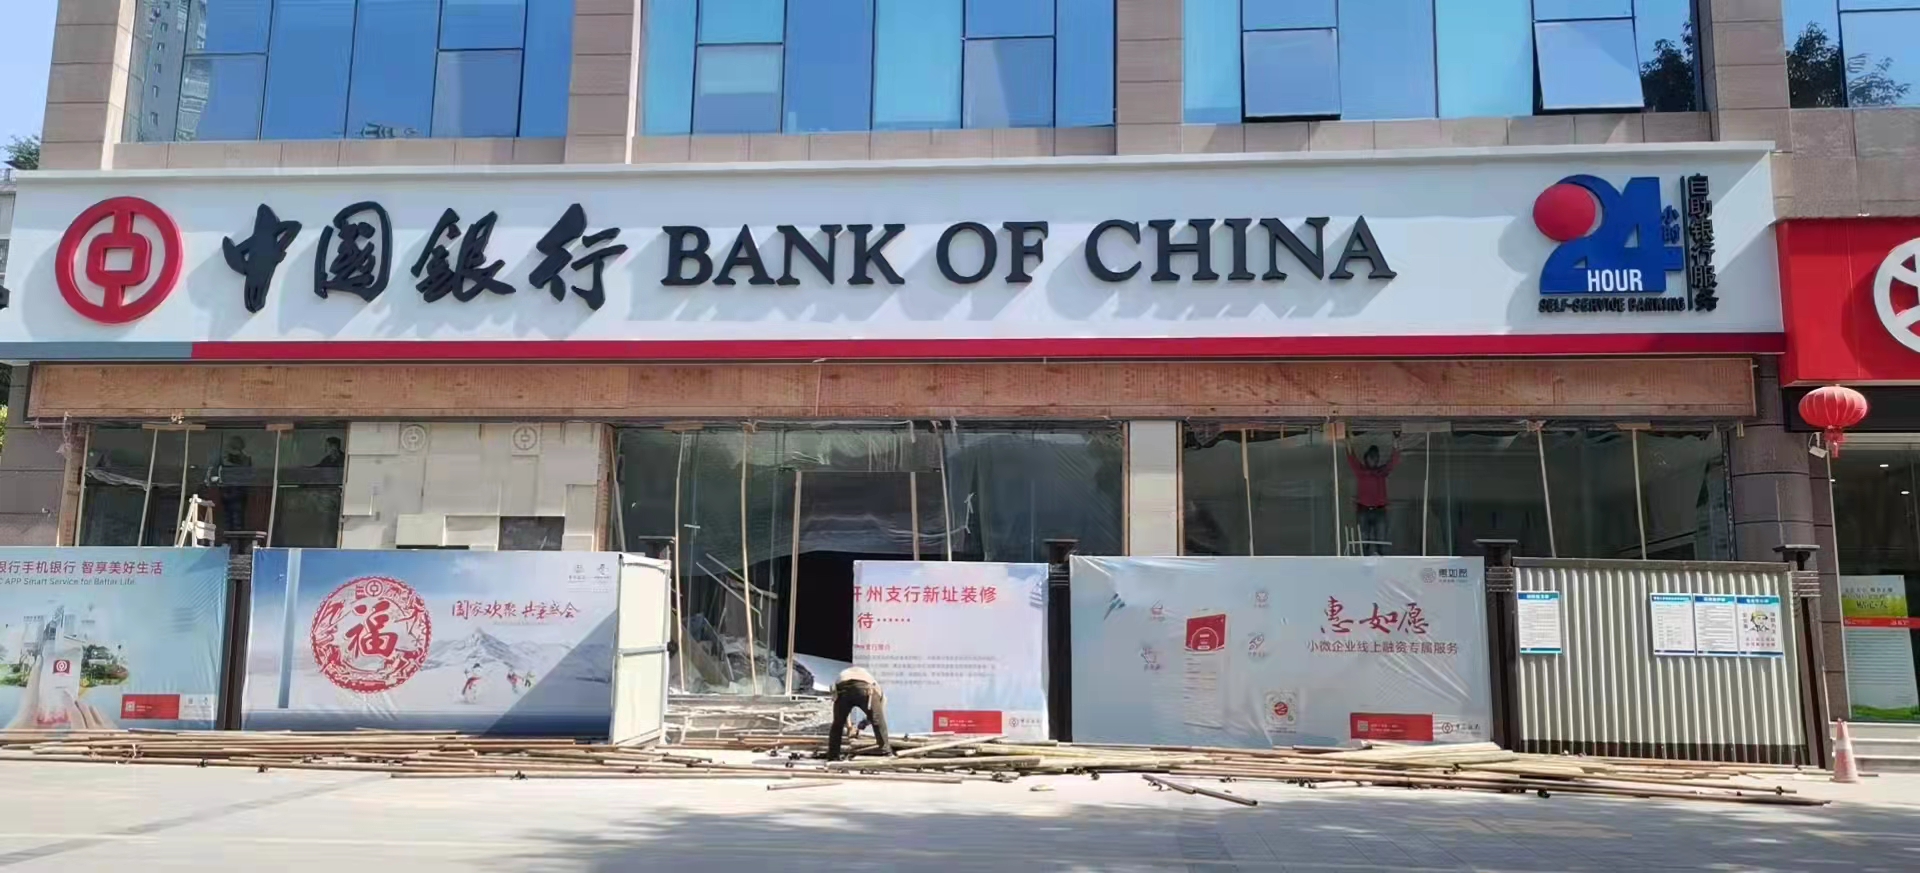 中国银行门楣店招